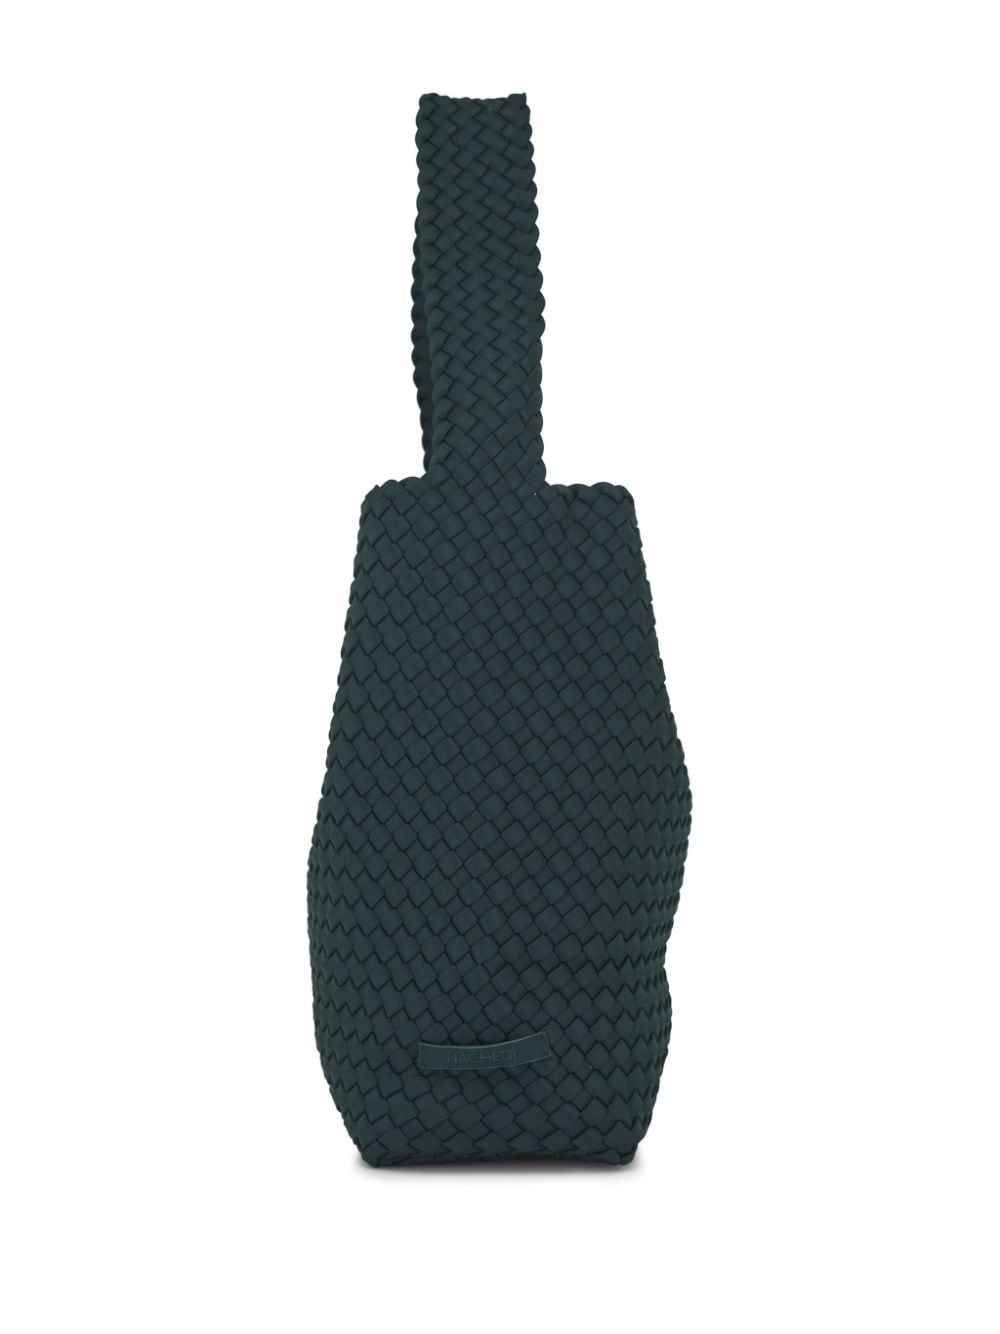 NAGHEDI Nomad interwoven shoulder bag - Groen